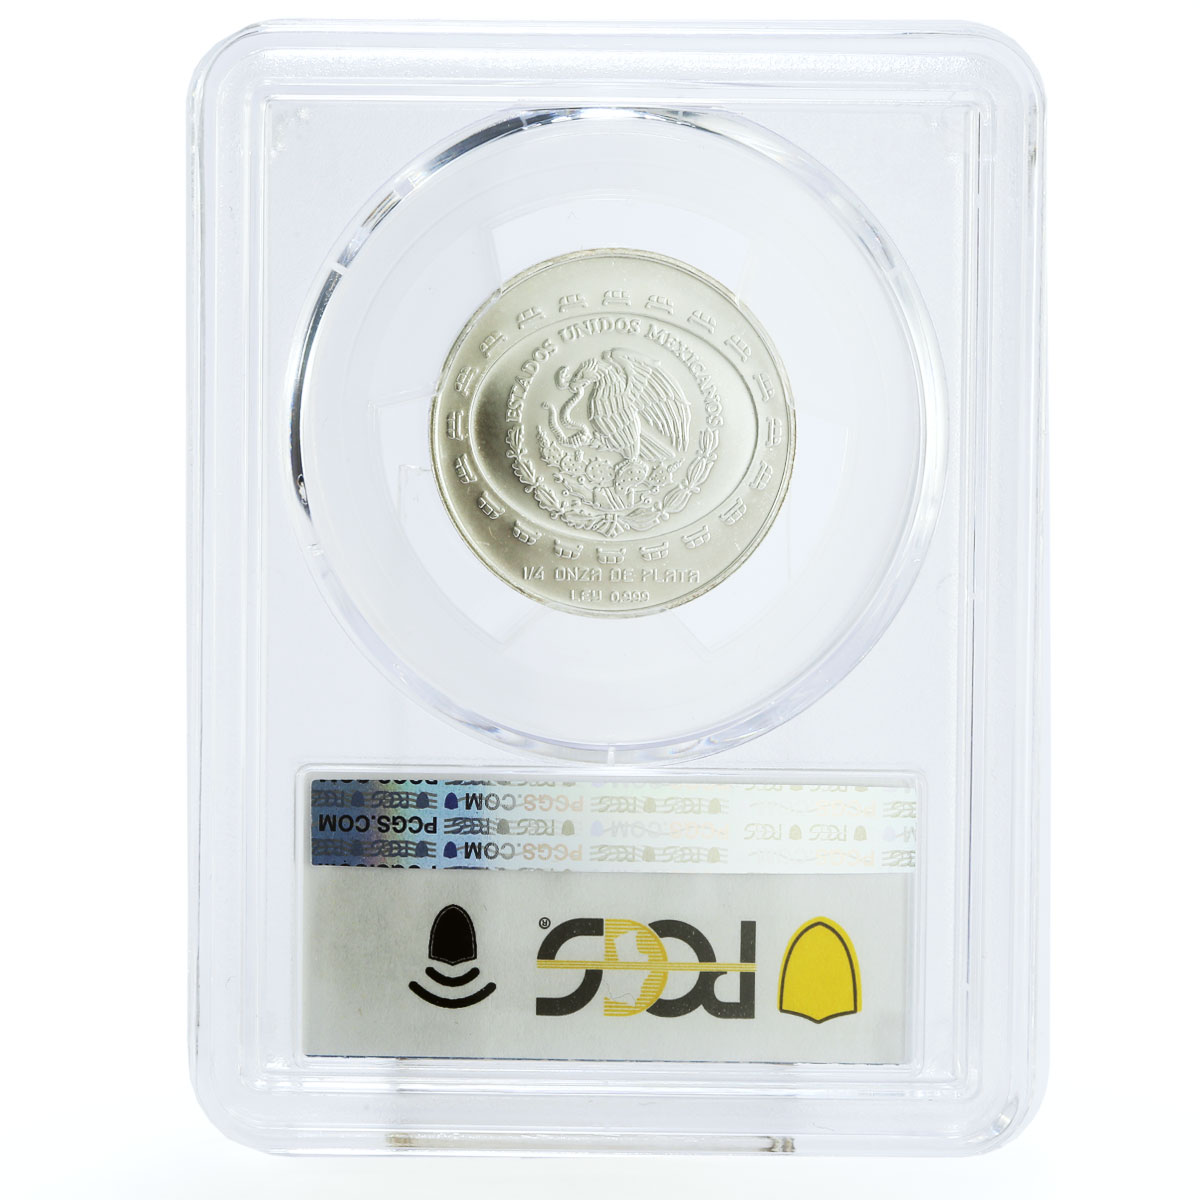 Mexico 1 peso Disco de La Muerte Disc of Death MS67 PCGS silver coin 1998